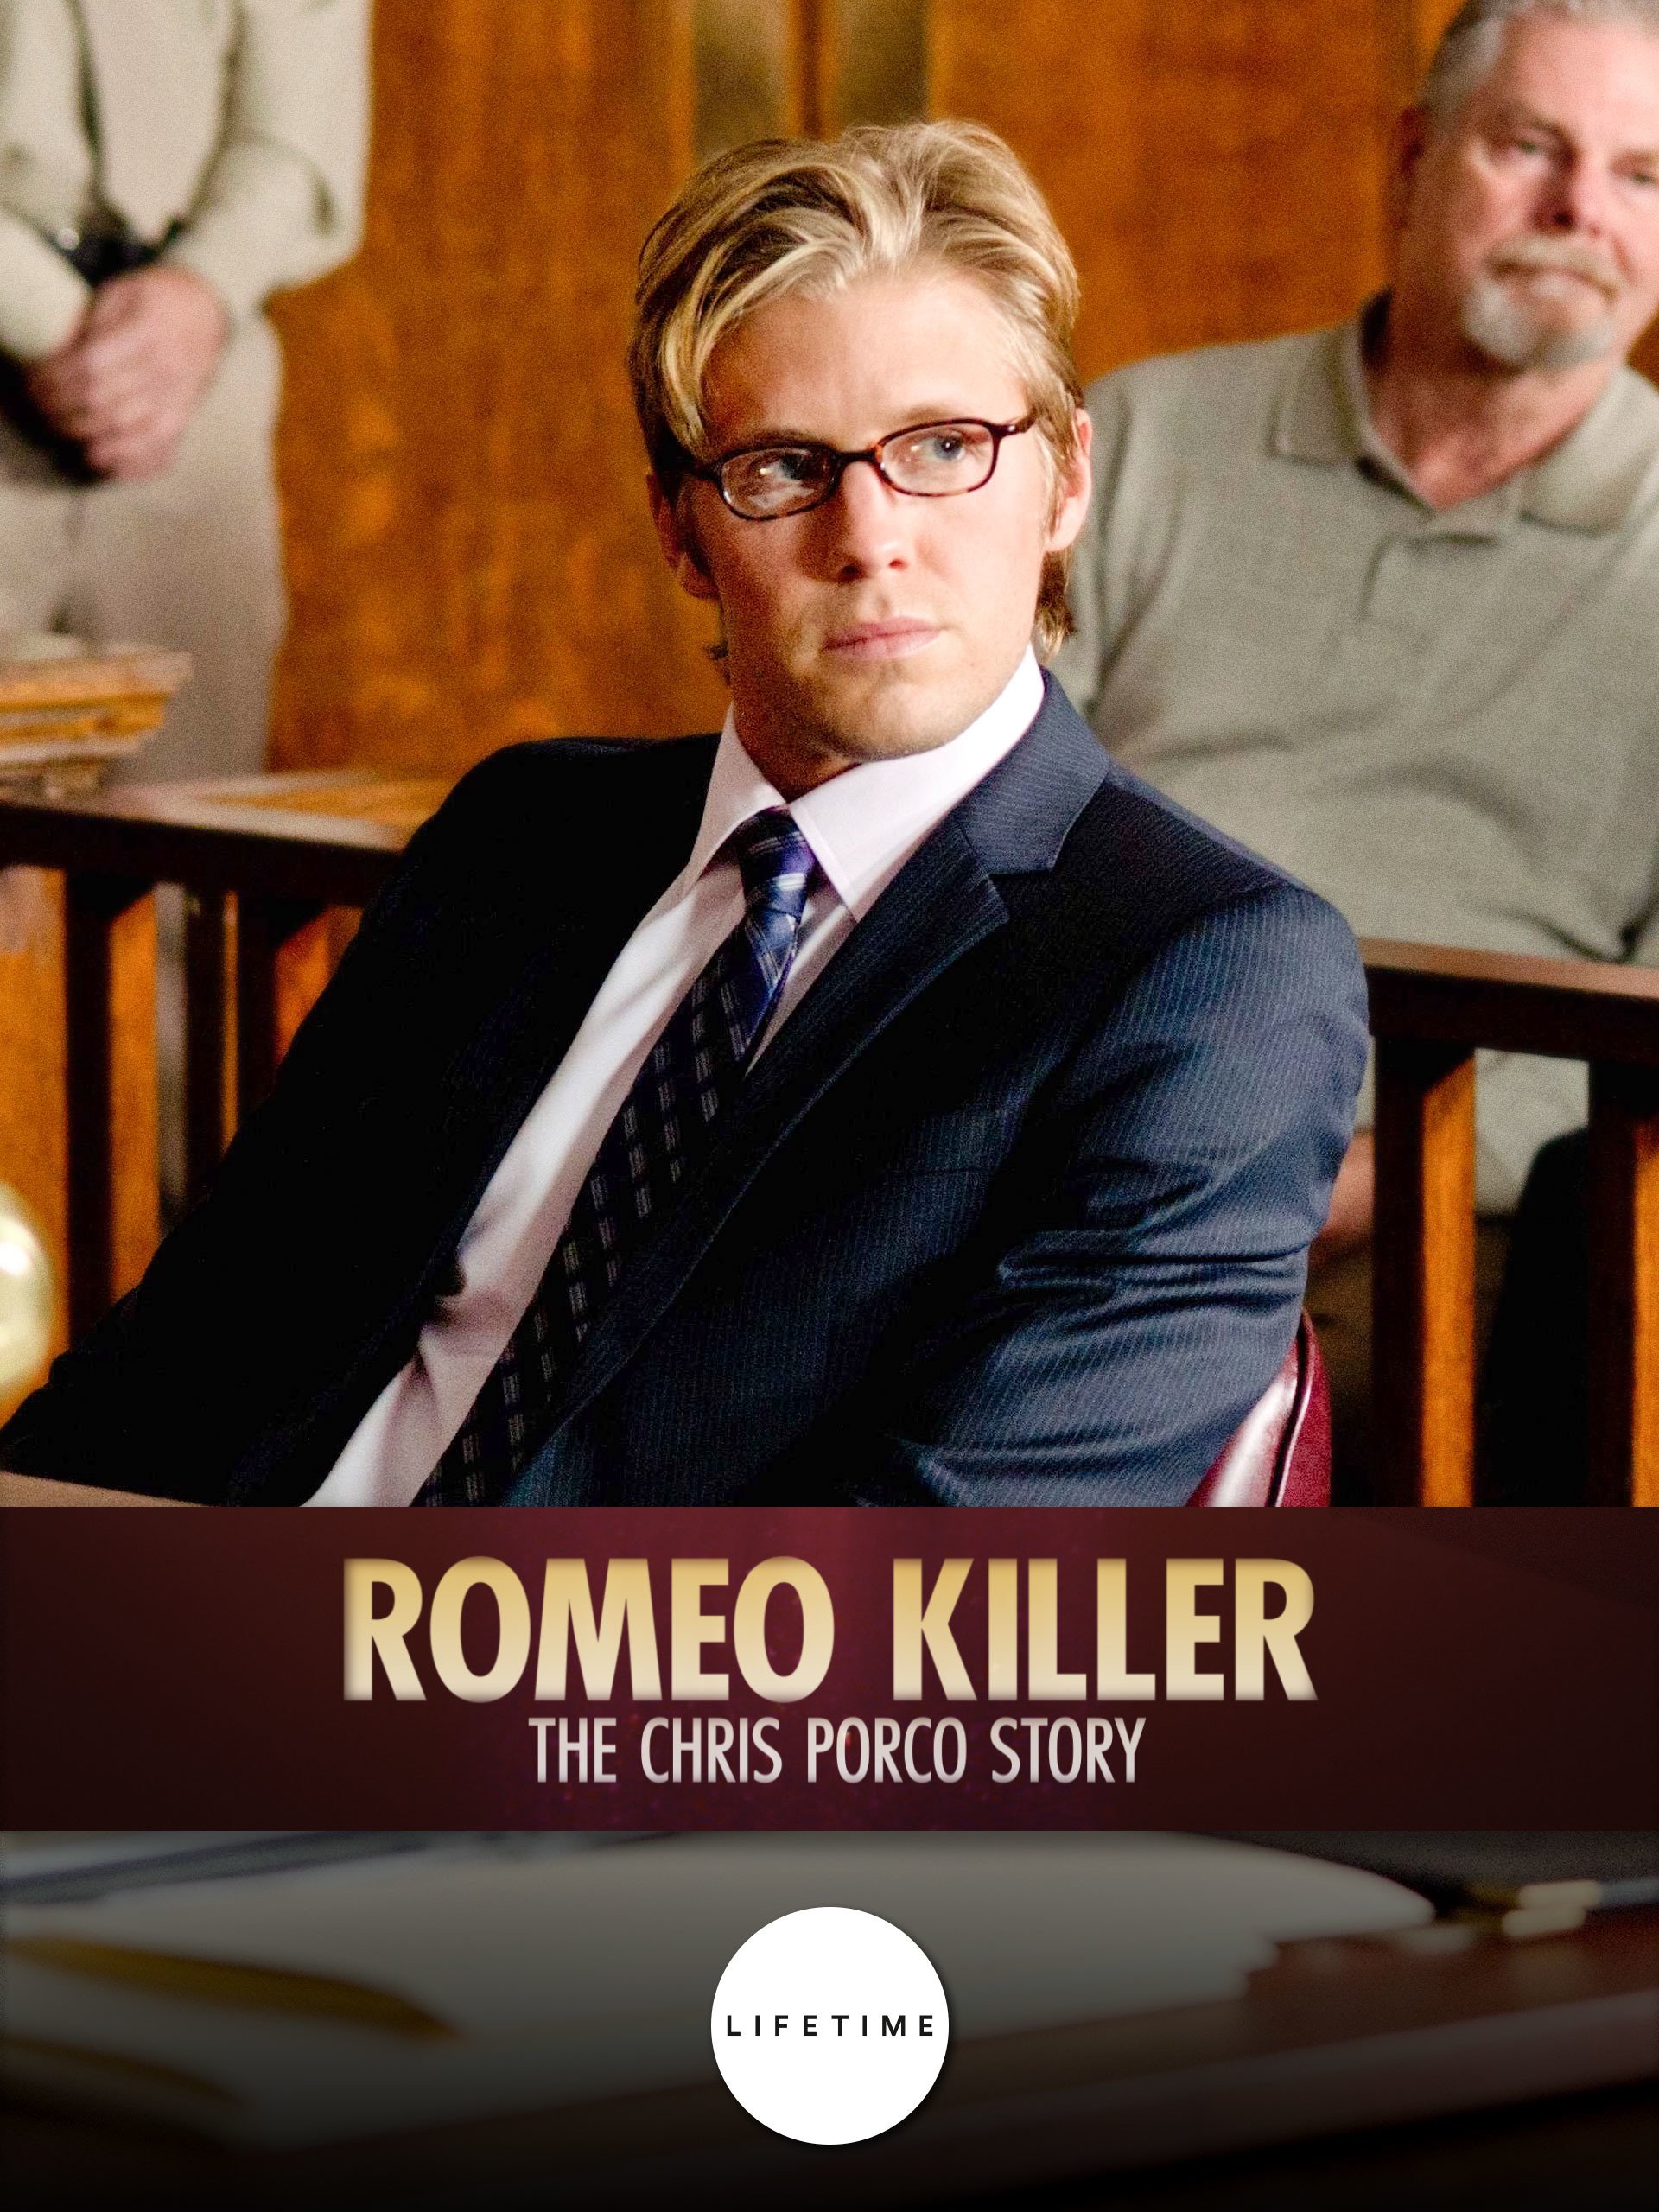 Romeo Killer: The Chris Porco Story (2013) starring Eric McCormack on DVD on DVD